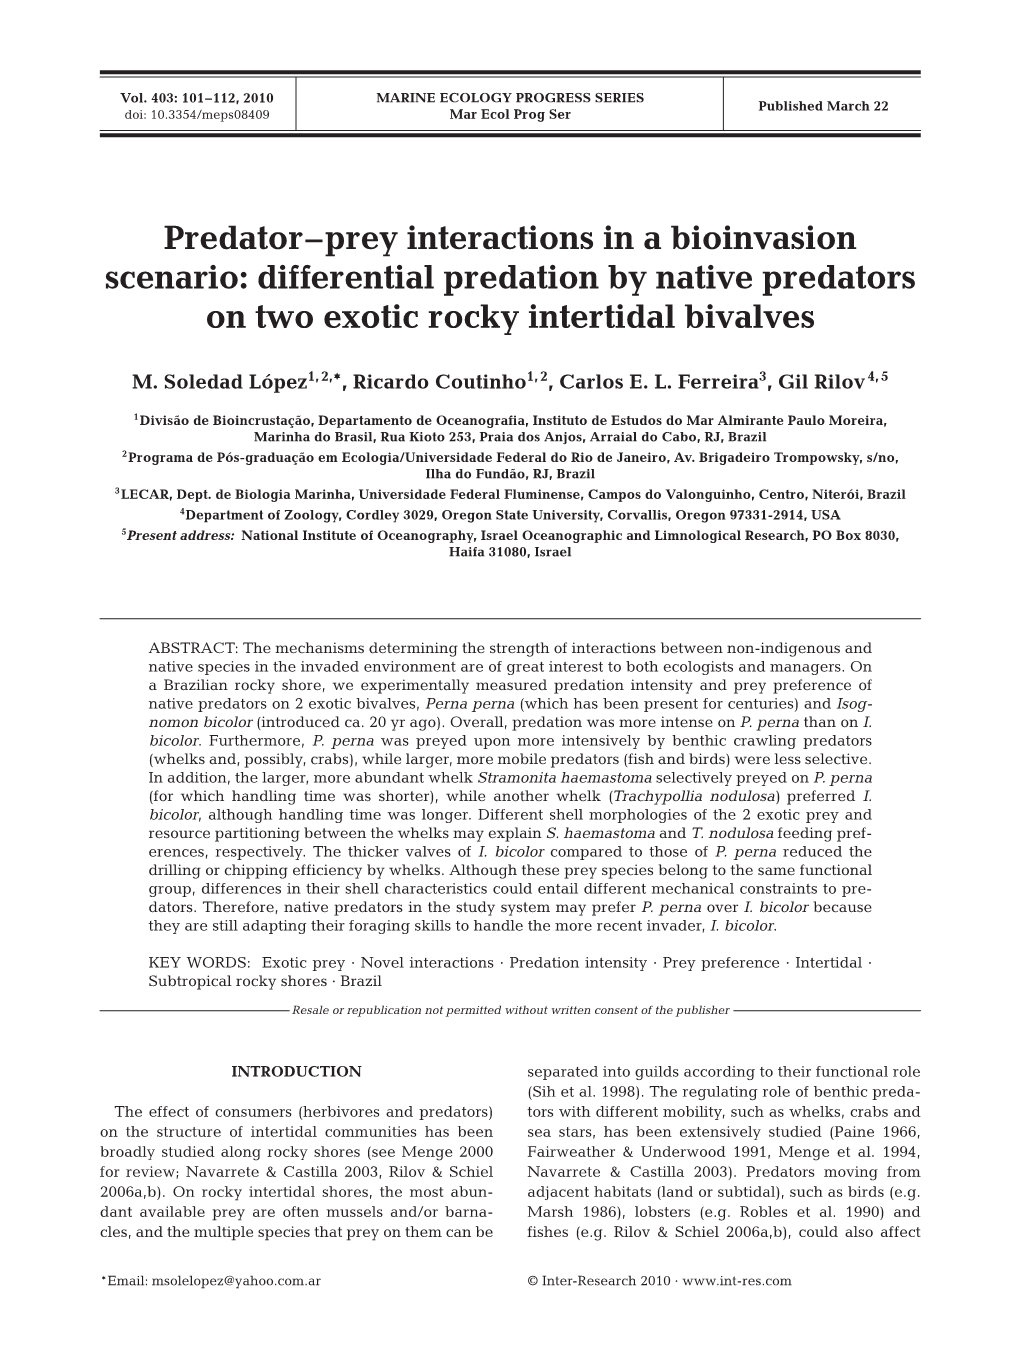 Predator–Prey Interactions in a Bioinvasion Scenario: Differential Predation by Native Predators on Two Exotic Rocky Intertidal Bivalves